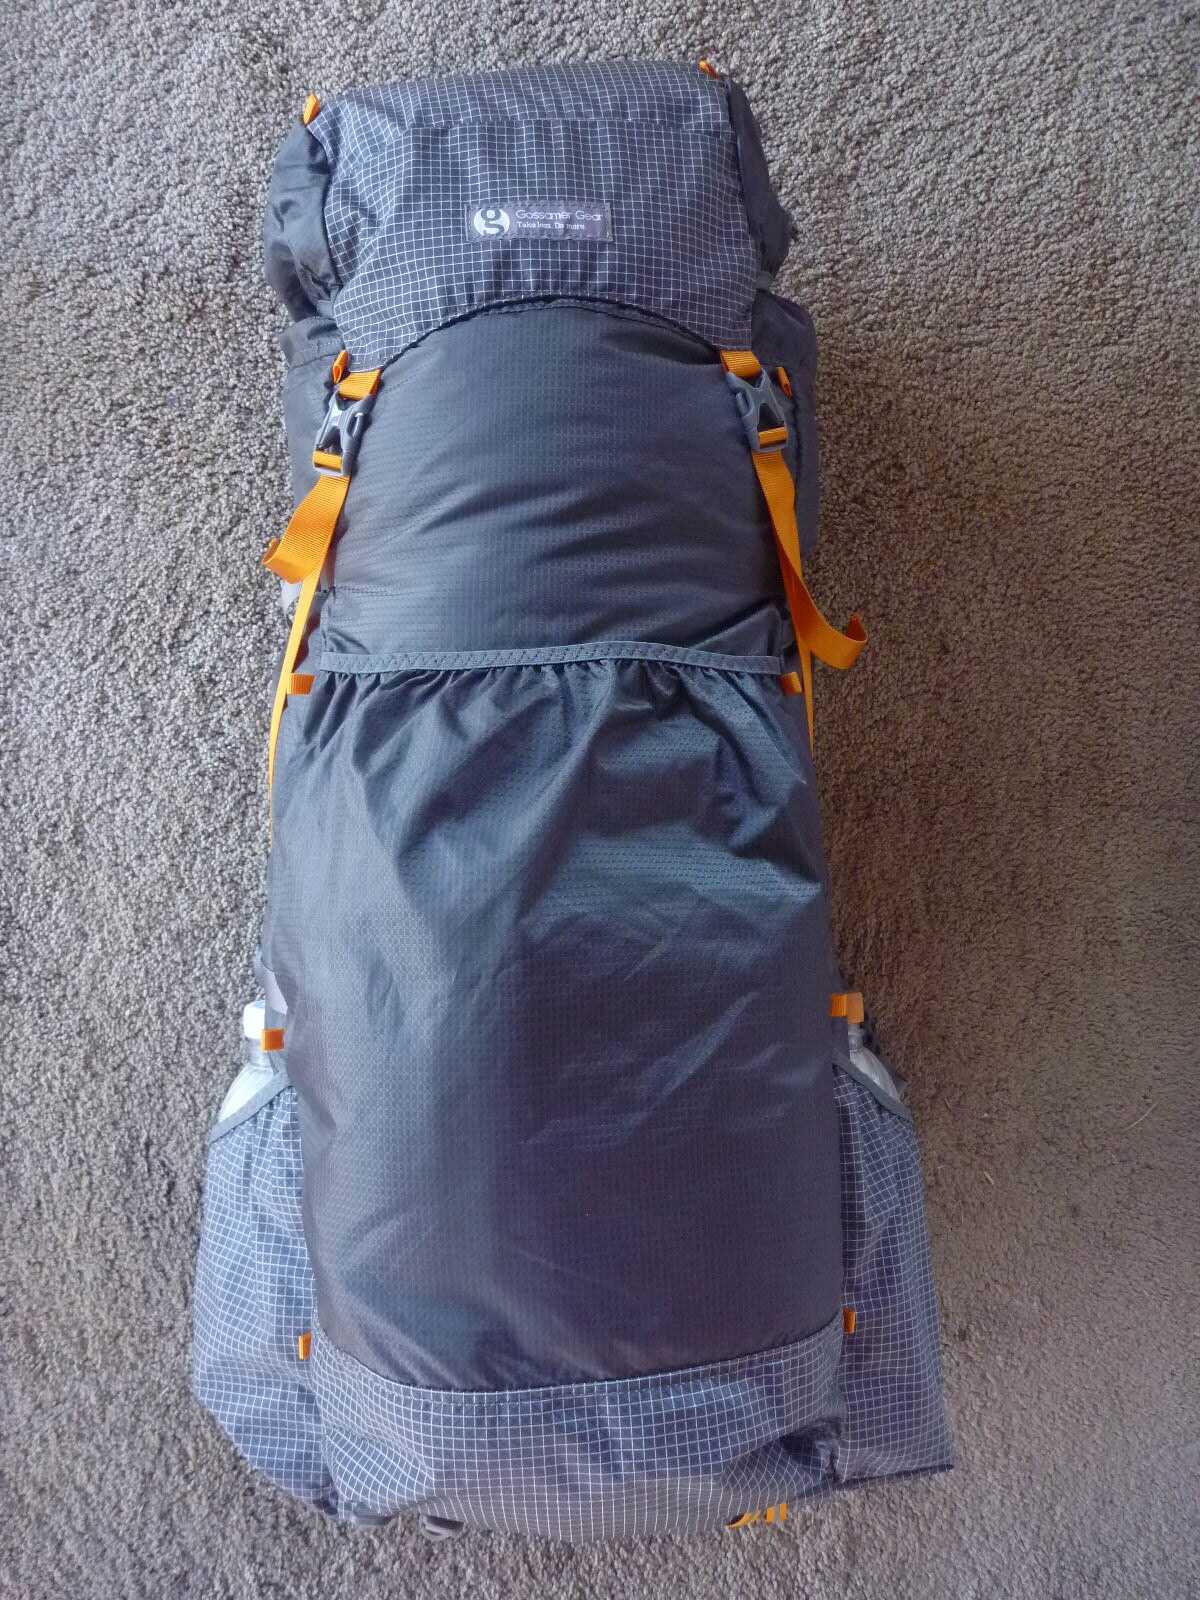 Gossamer Gear Silverback 50 Internal Frame Backpack, Size Large -  Backpacking Light